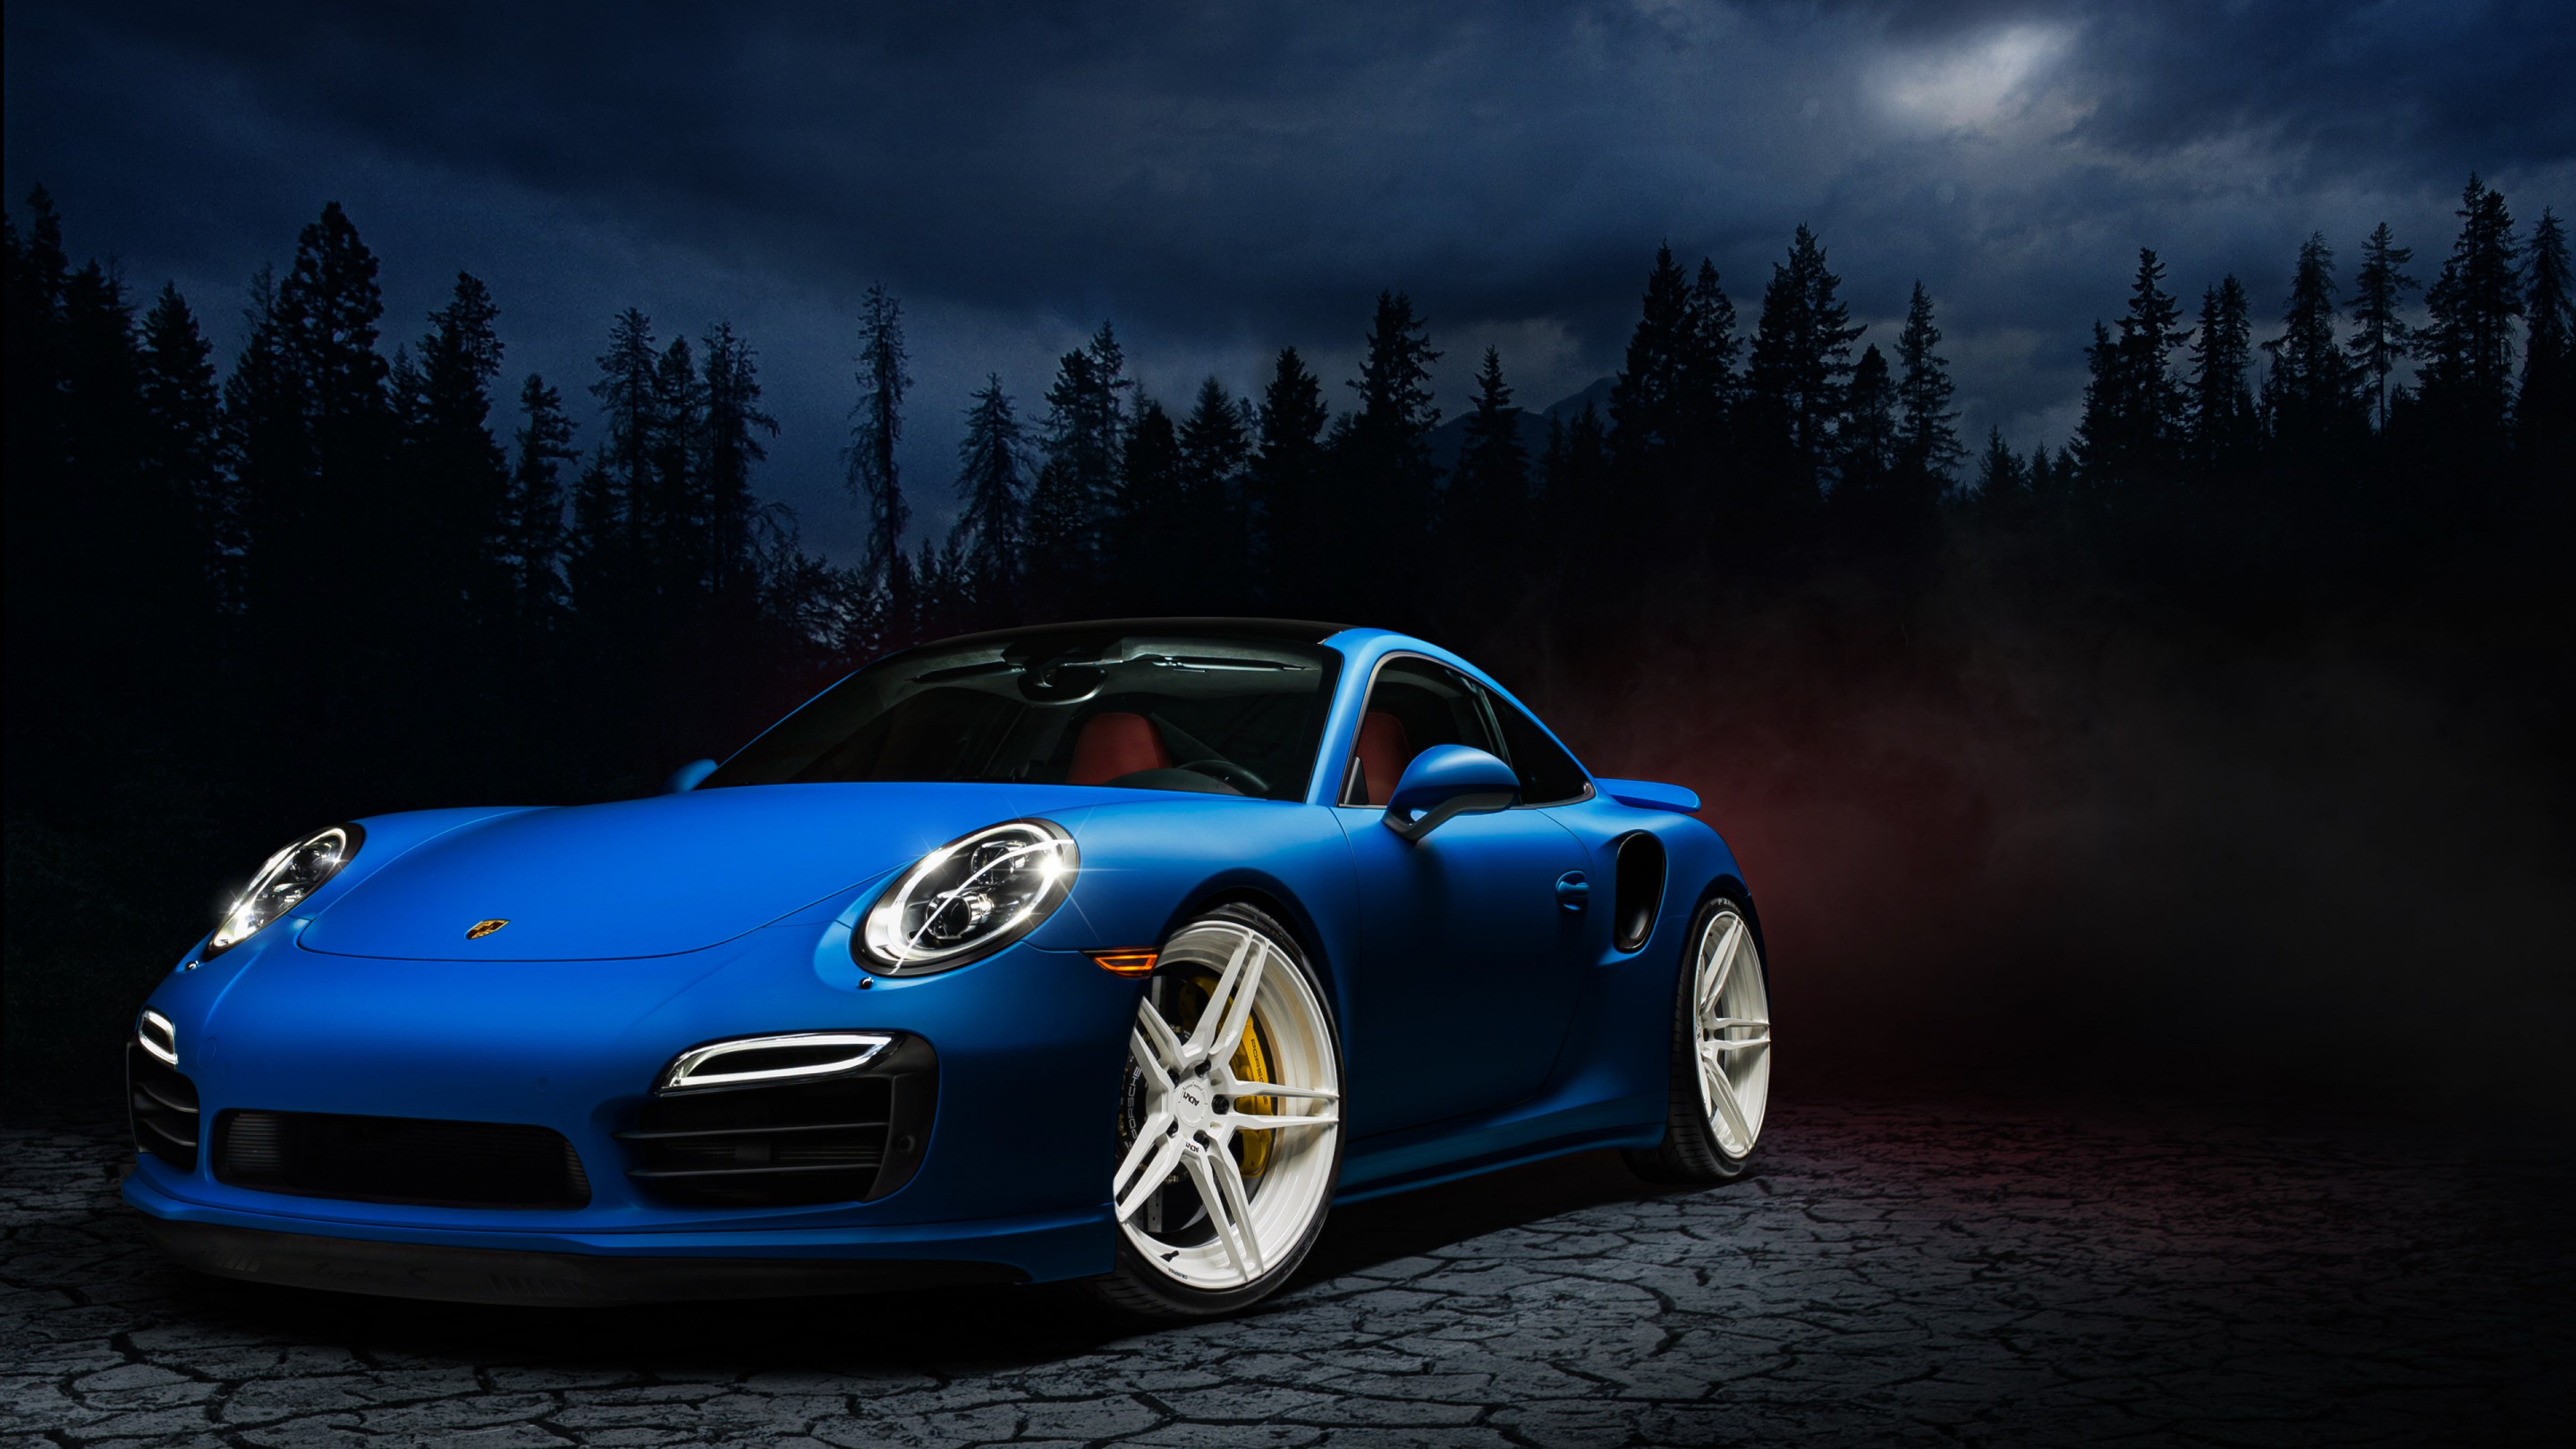 Porsche 911 blue wallpaper 2880x1620